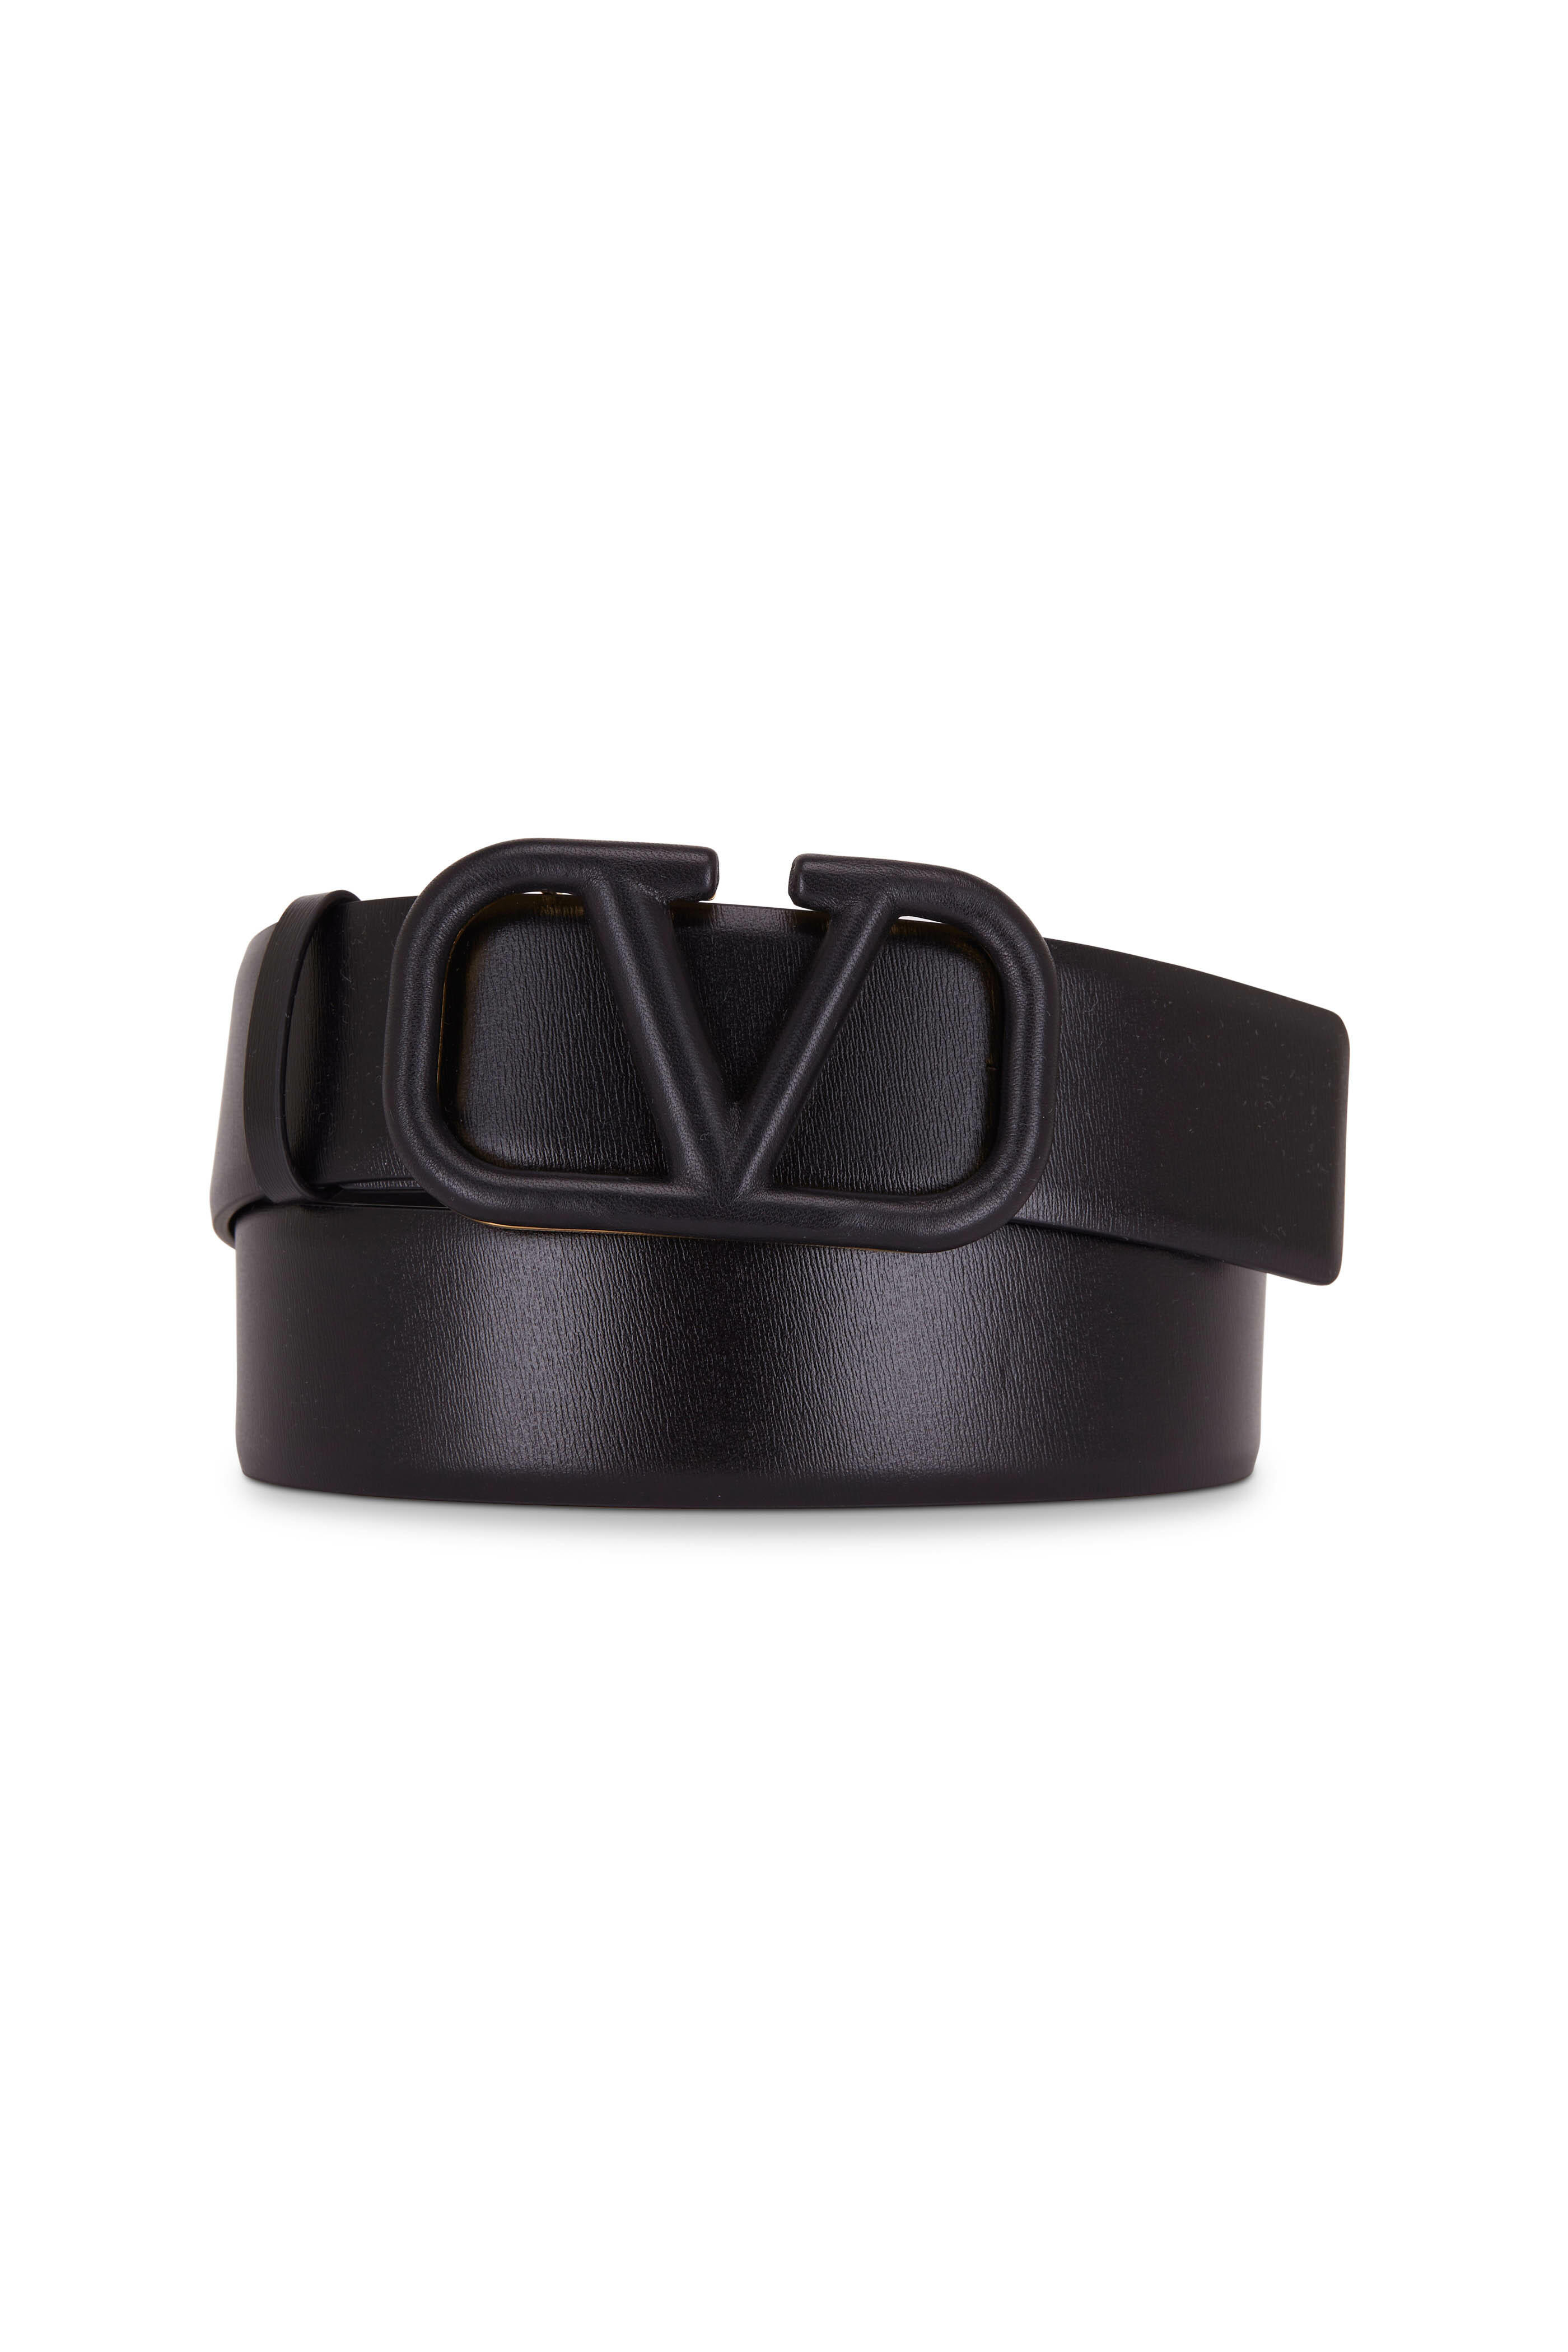 VALENTINO GARAVANI Leather belt VLOGO